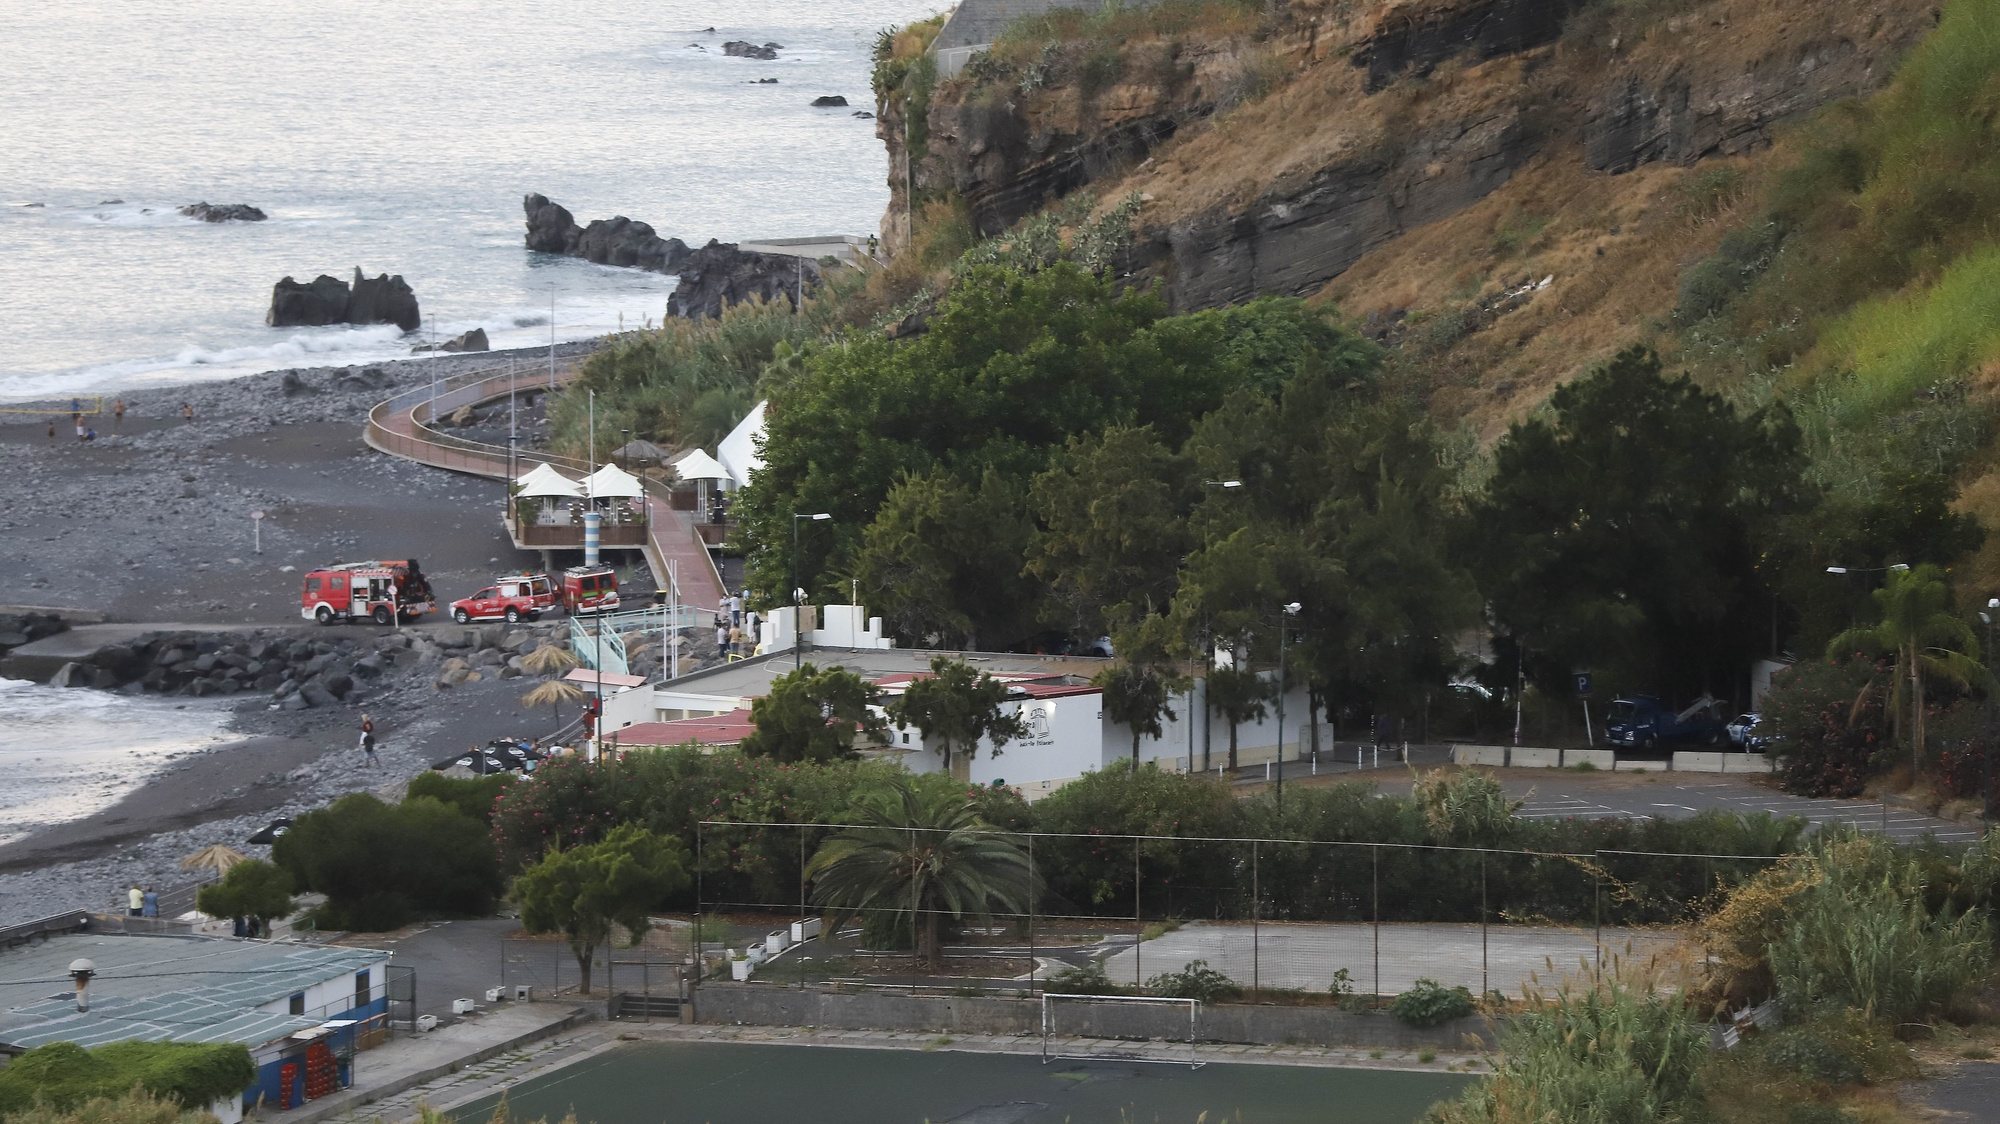 Derrocada de grande dimensão que ocorreu hoje na Praia Formosa, na zona da Praia do Arieiro, atingindo a ‘promenade’, sem provocar vítimas, no Funchal, ilha da Madeira, 26 de setembro de 2021. HOMEM DE GOUVEIA/LUSA